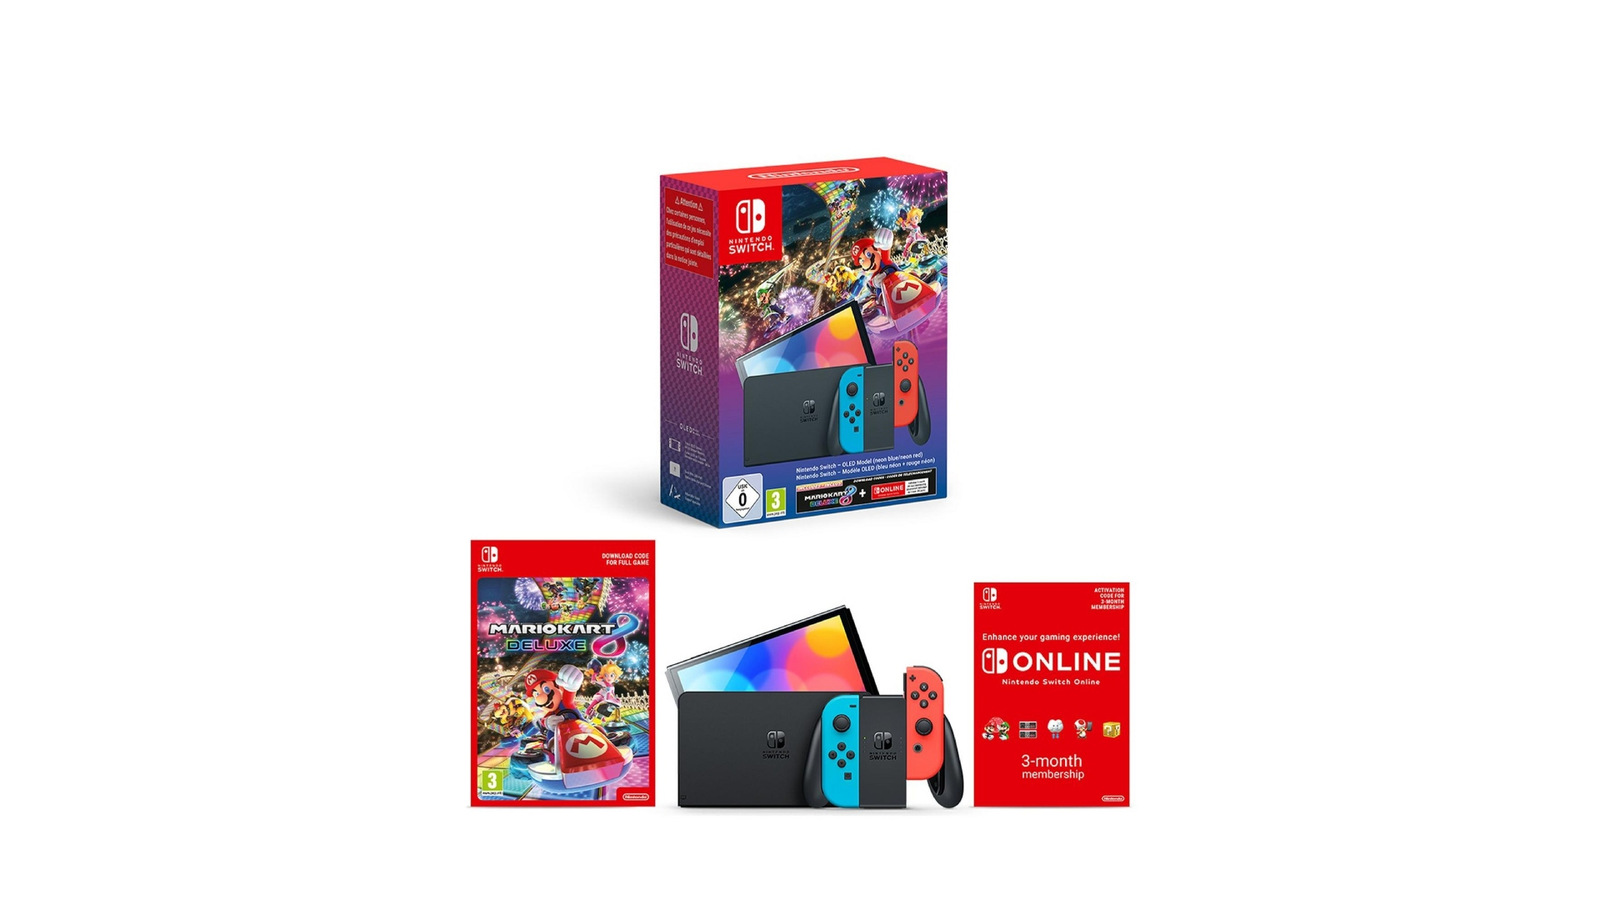 Nintendo Switch OLED (bleu/rouge) - Console Nintendo Switch